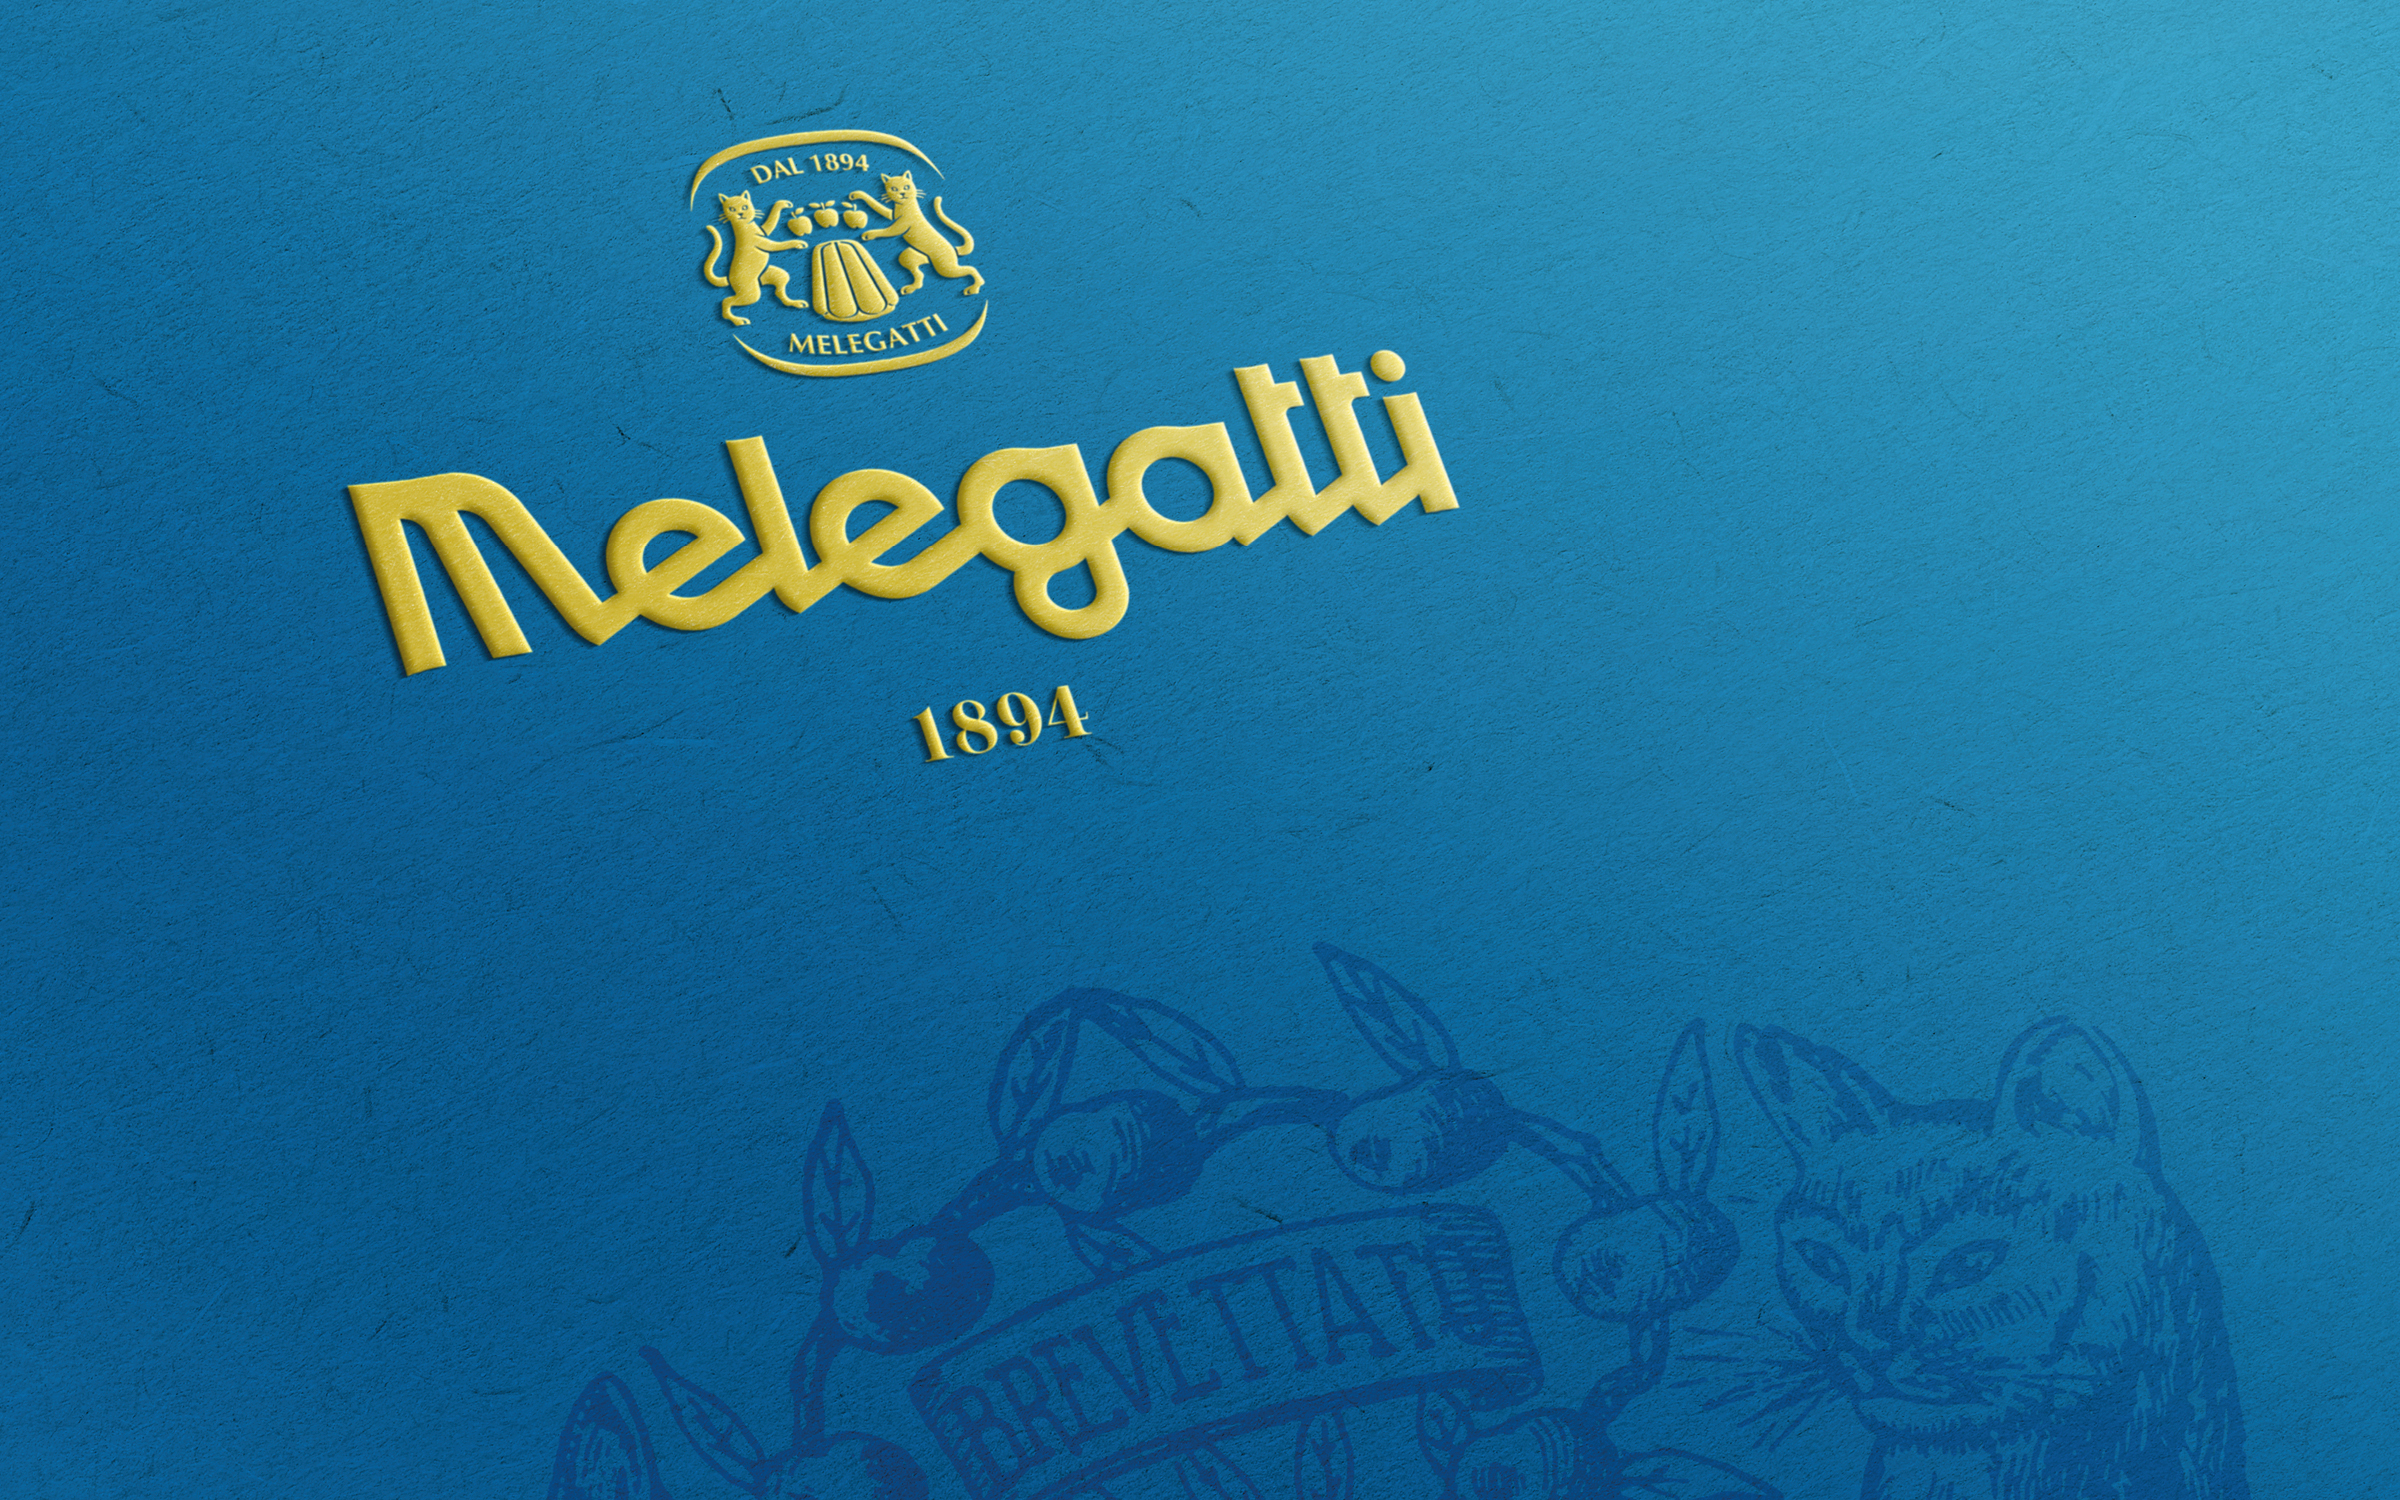 melegatti-slide-04.jpg